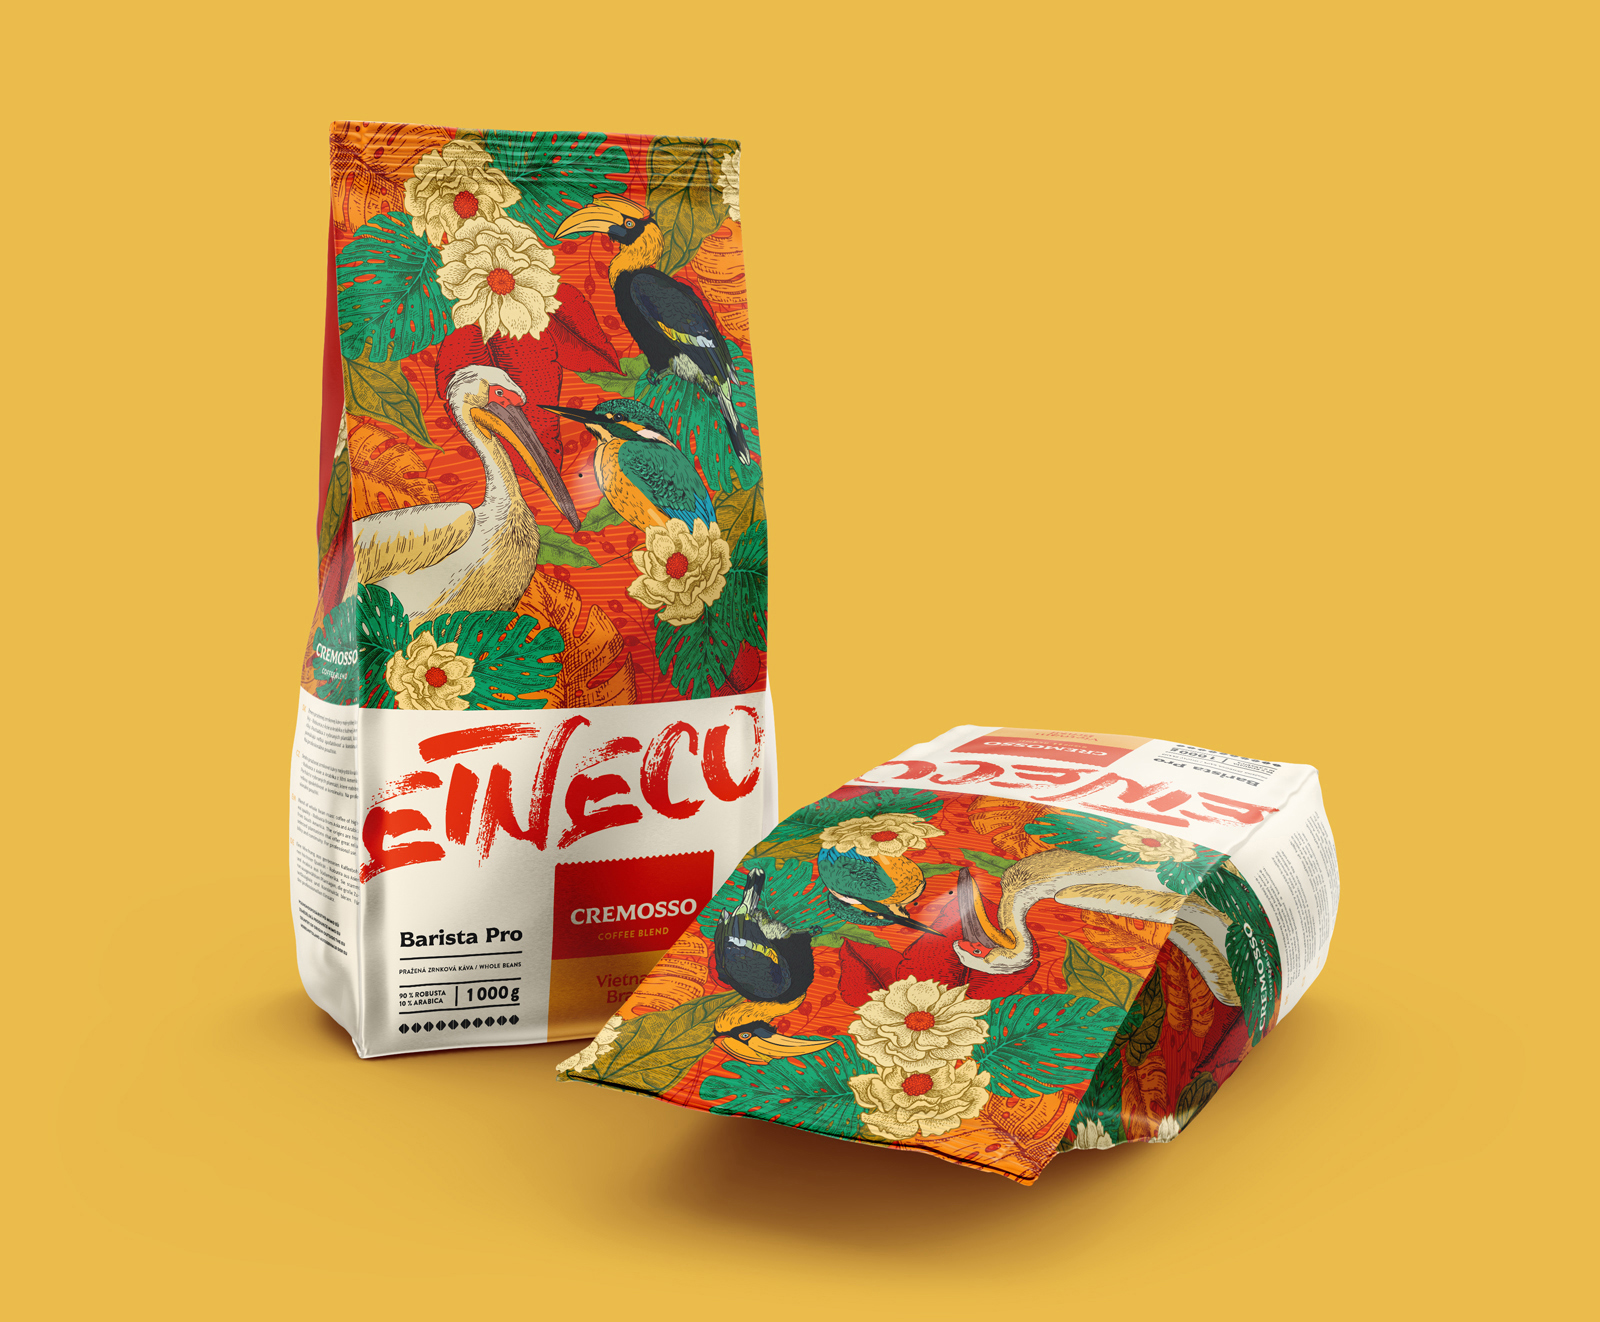 Etneco咖啡包装设计